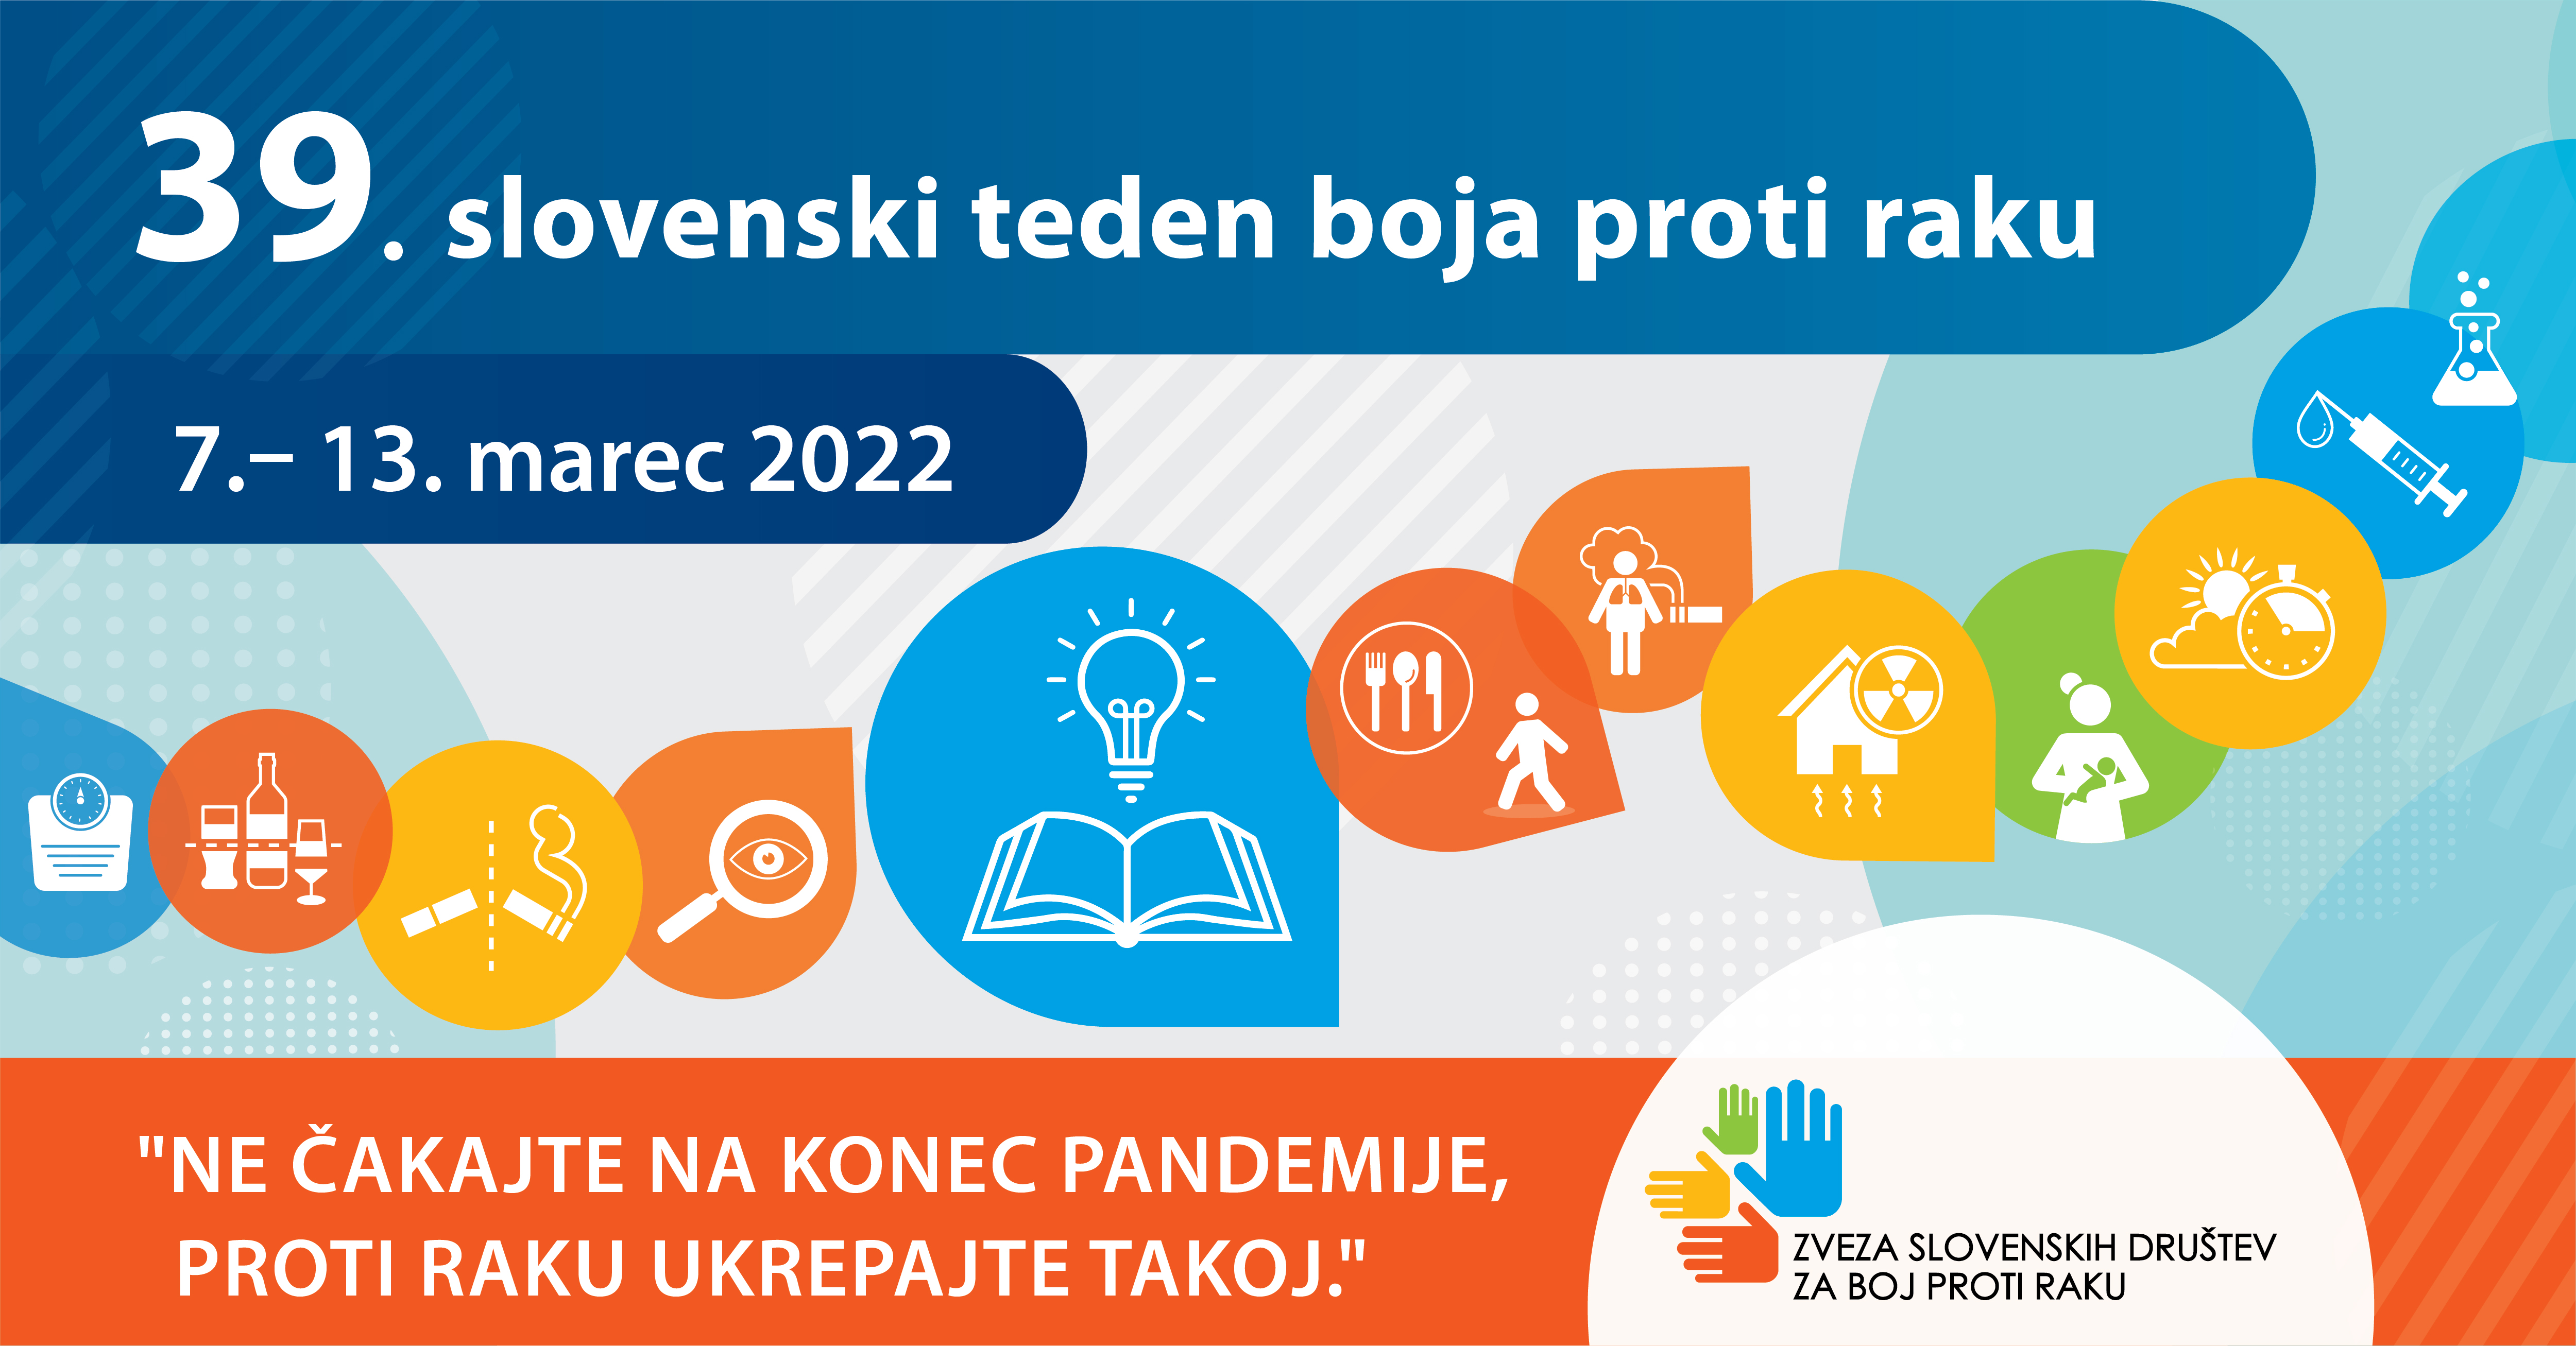 Program 39. slovenskega tedna boja proti raku 2022 z geslom "Ne čakajte na konec pandemije, proti raku ukrepajte takoj!"